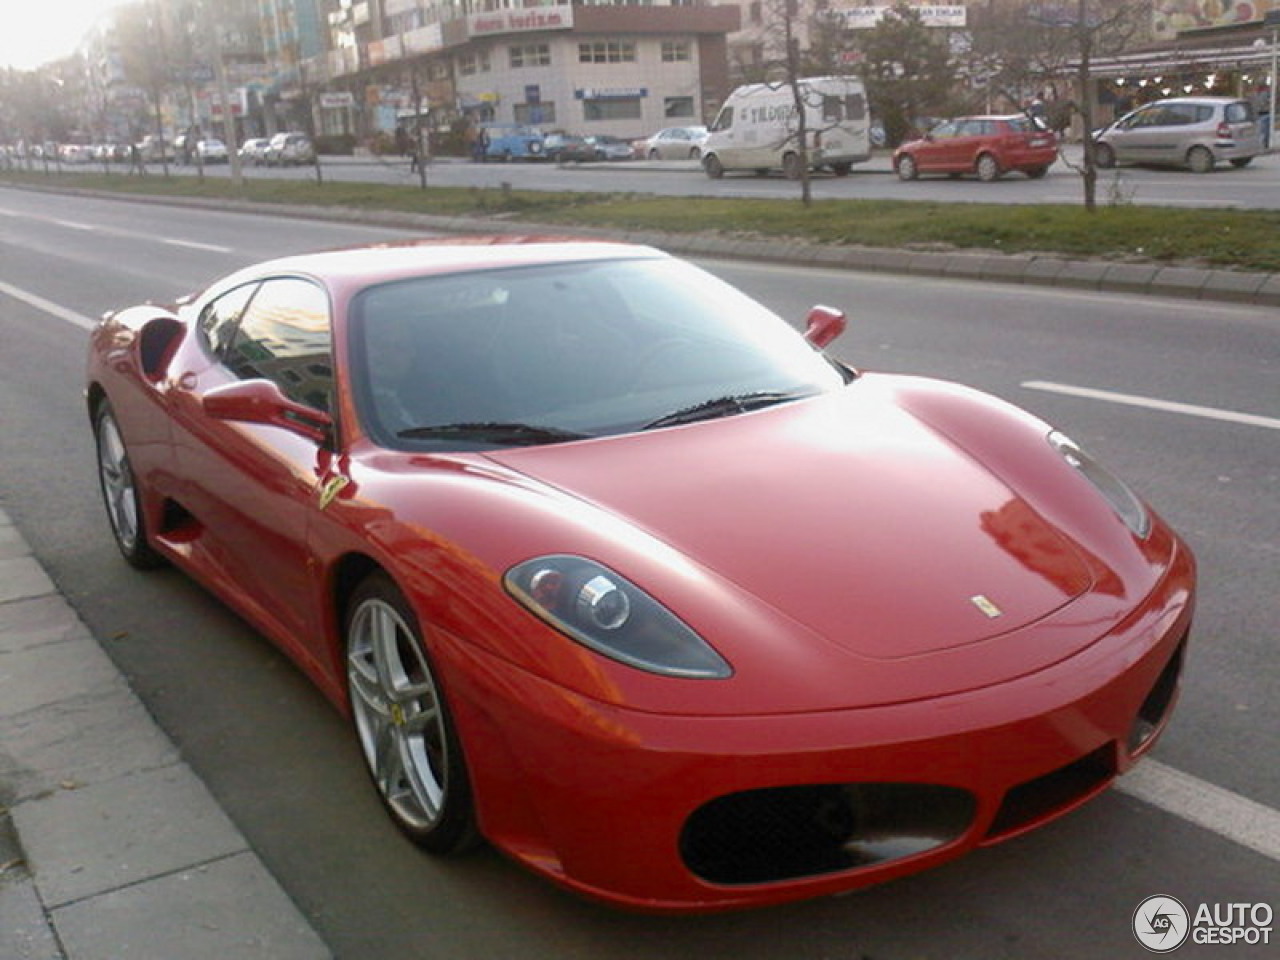 Ferrari F430